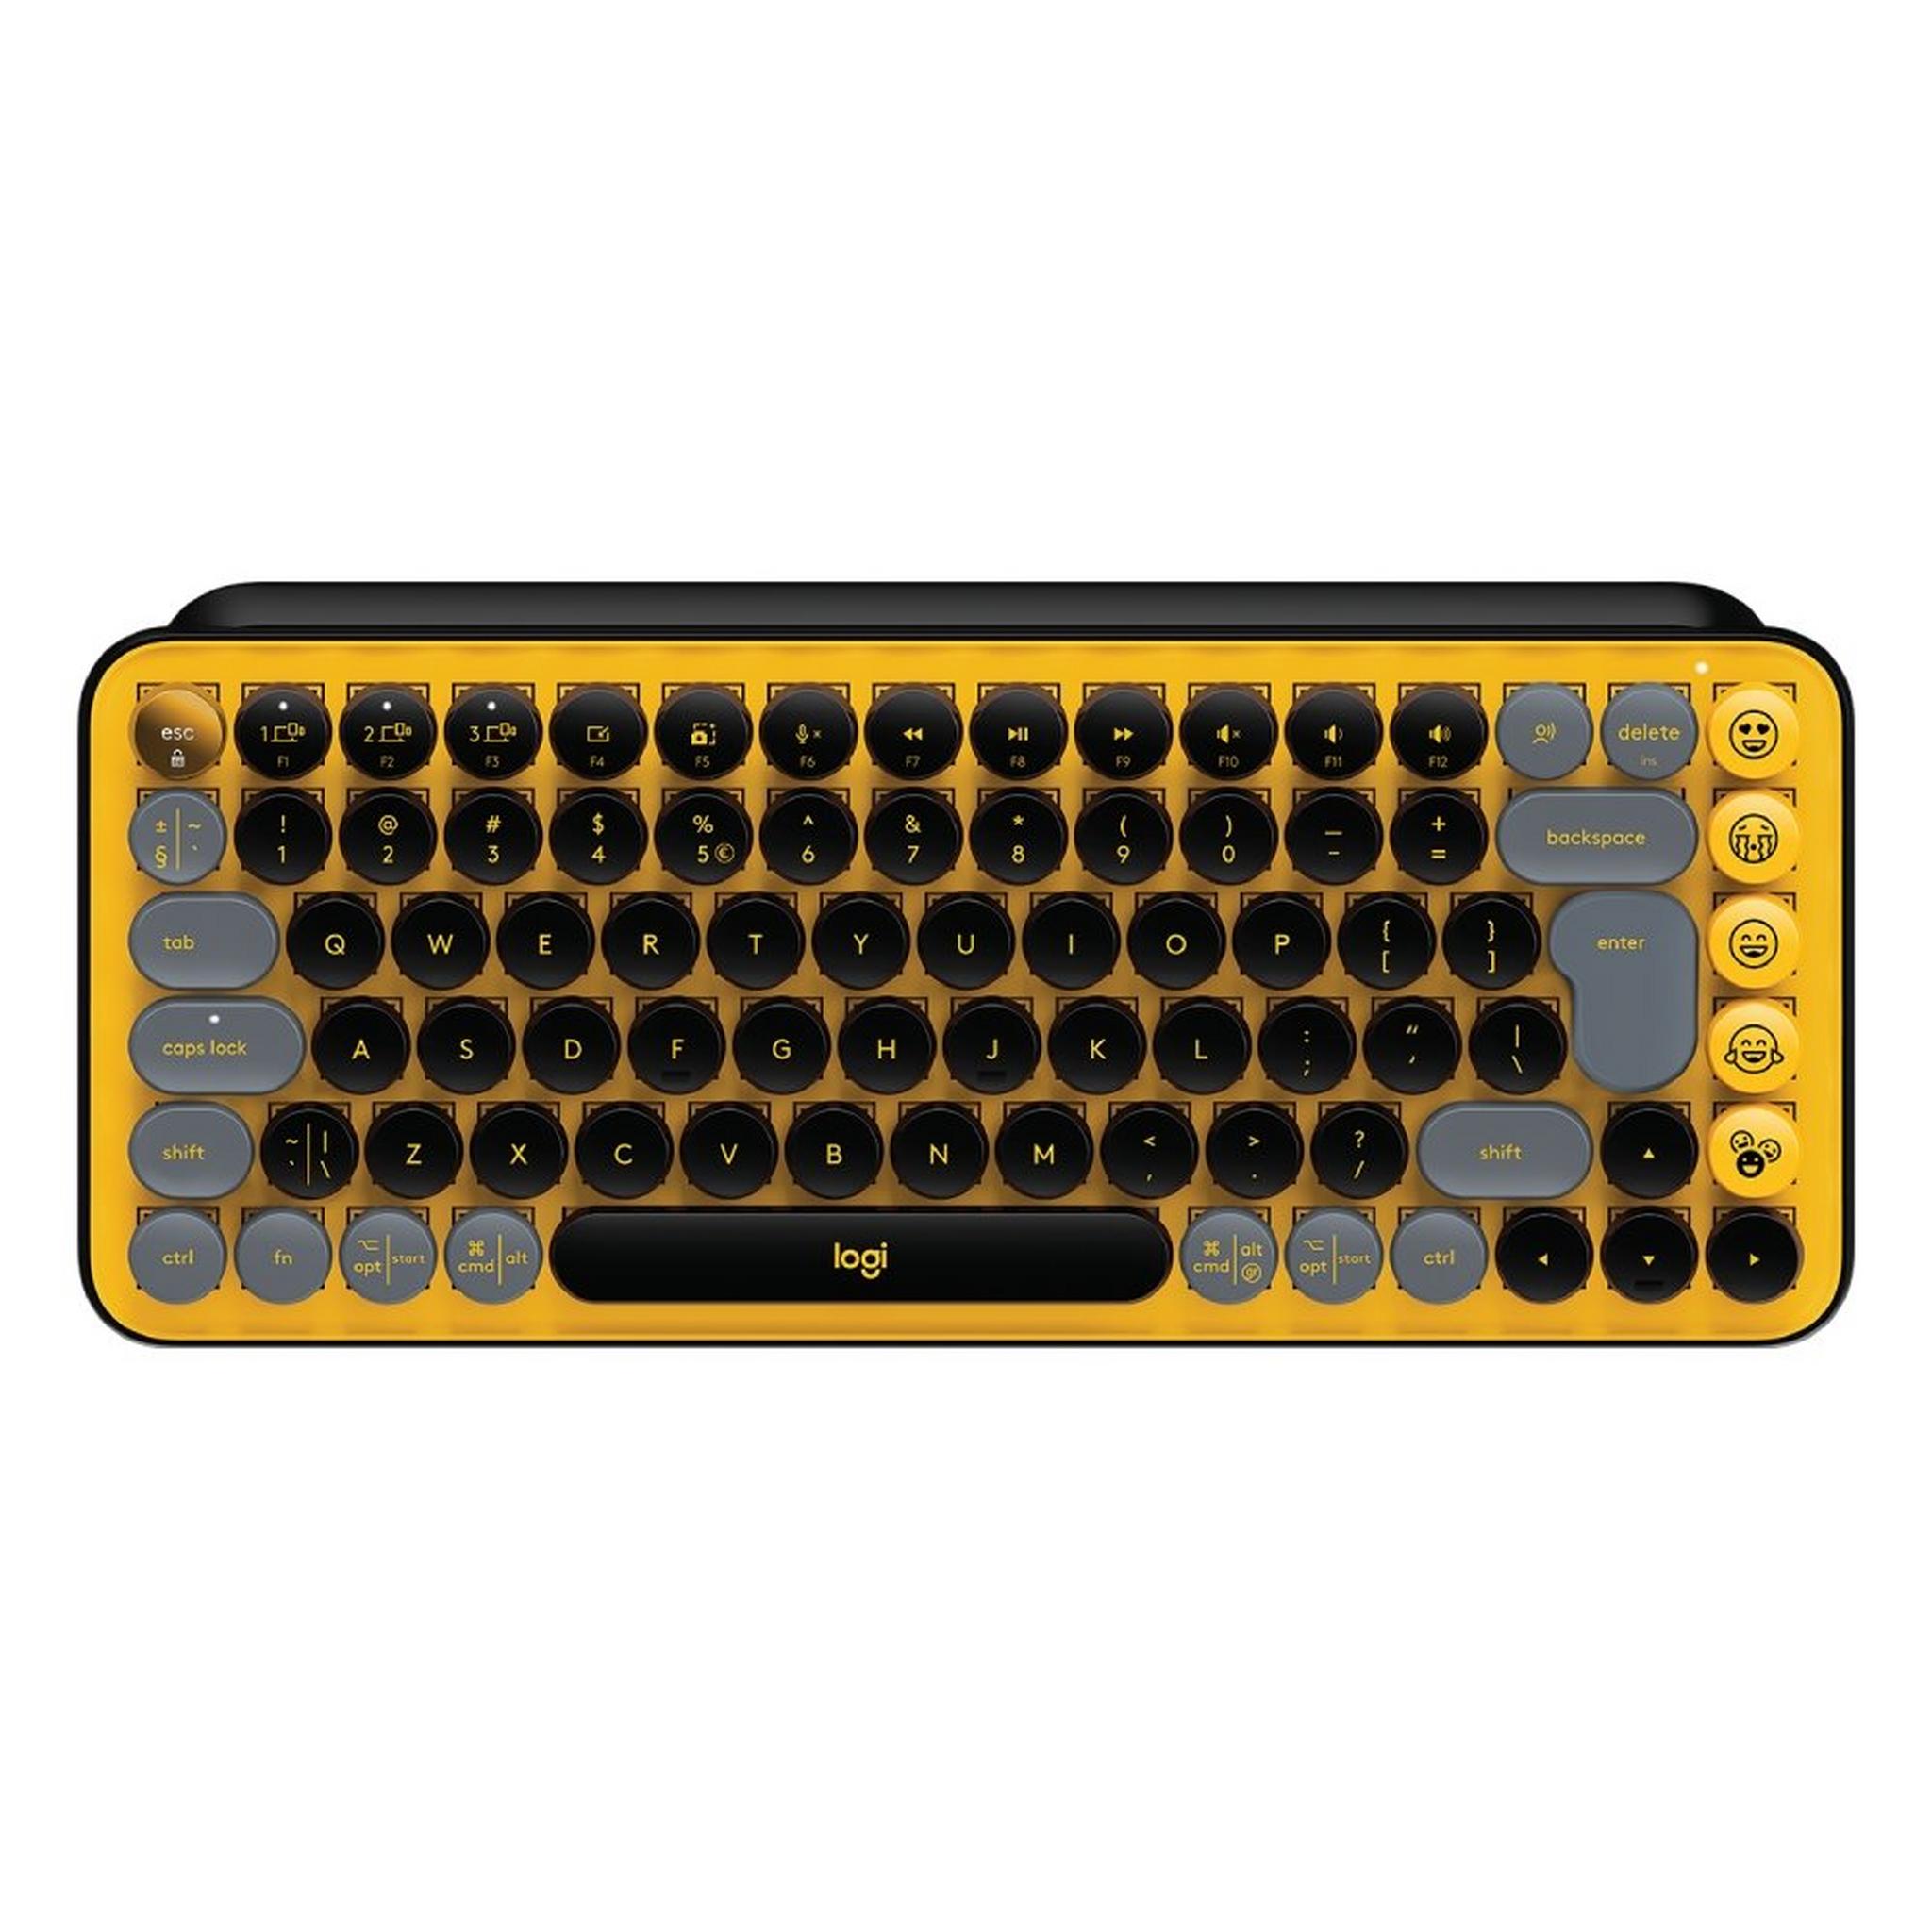 لوحة مفاتيح بوب كيز لاسلكية ميكانيكية مع مفاتيح بشكل ايموجي عربي - أصفر